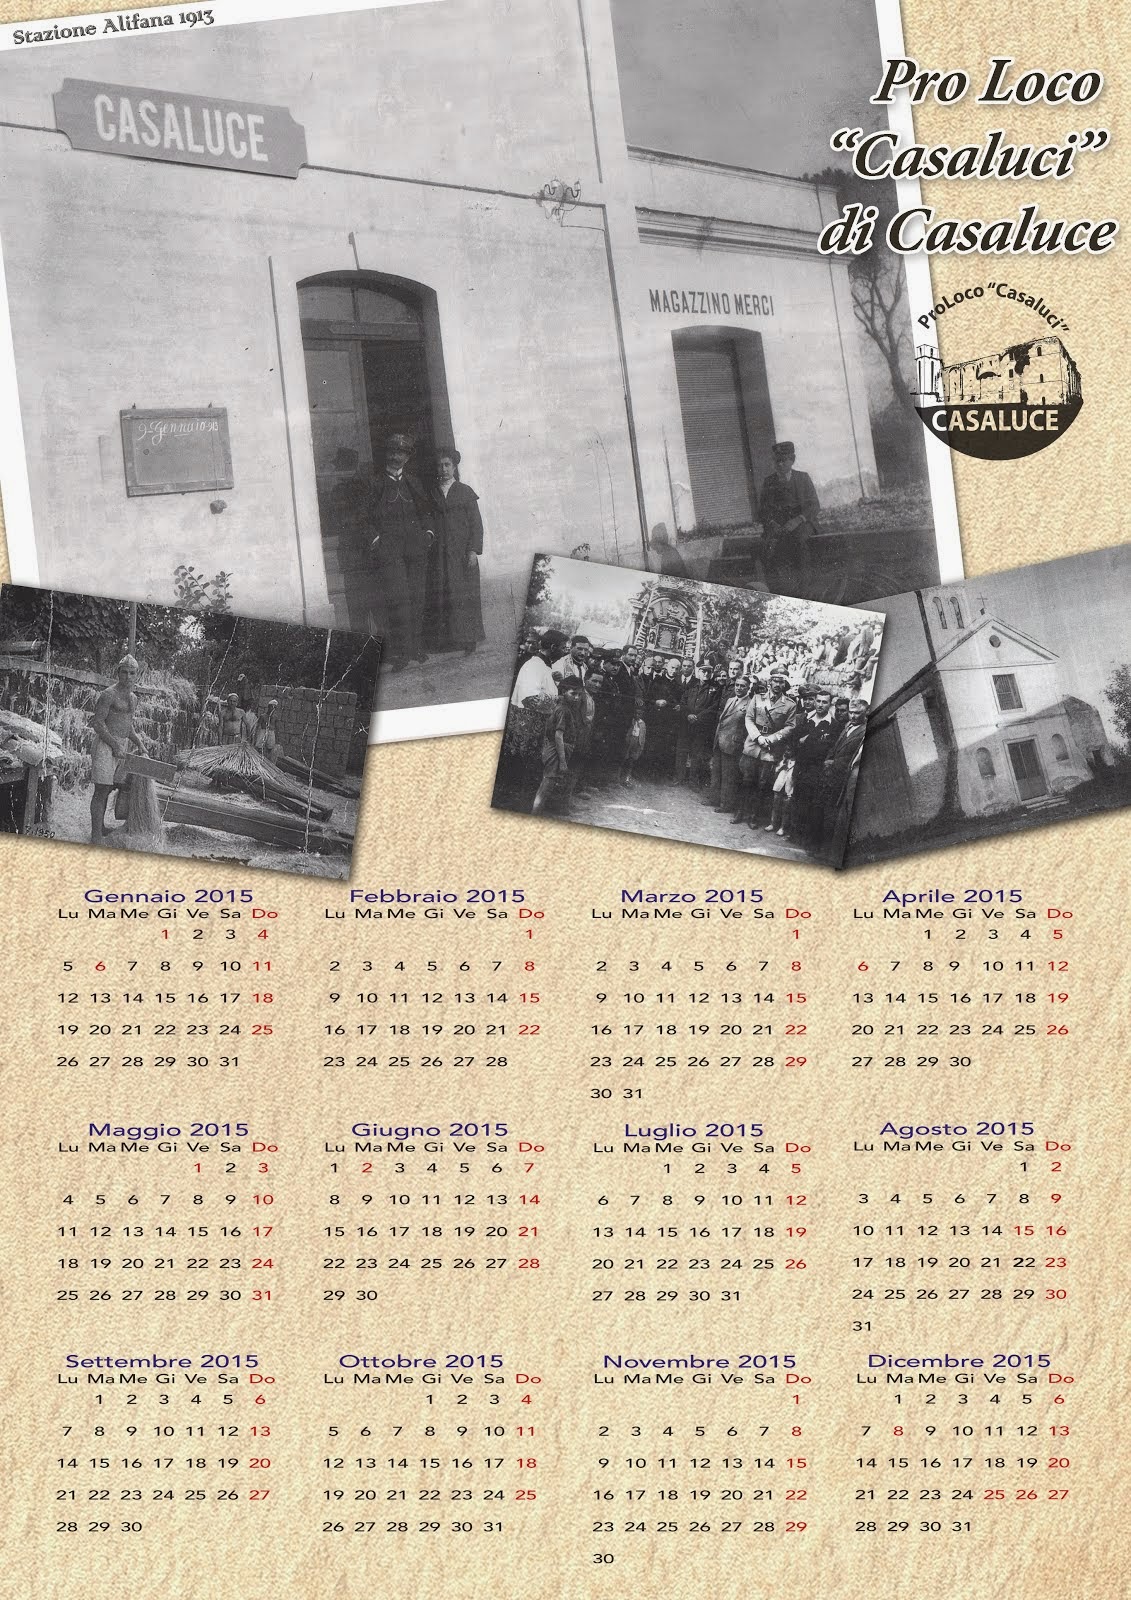 Calendario Pro Loco 2015